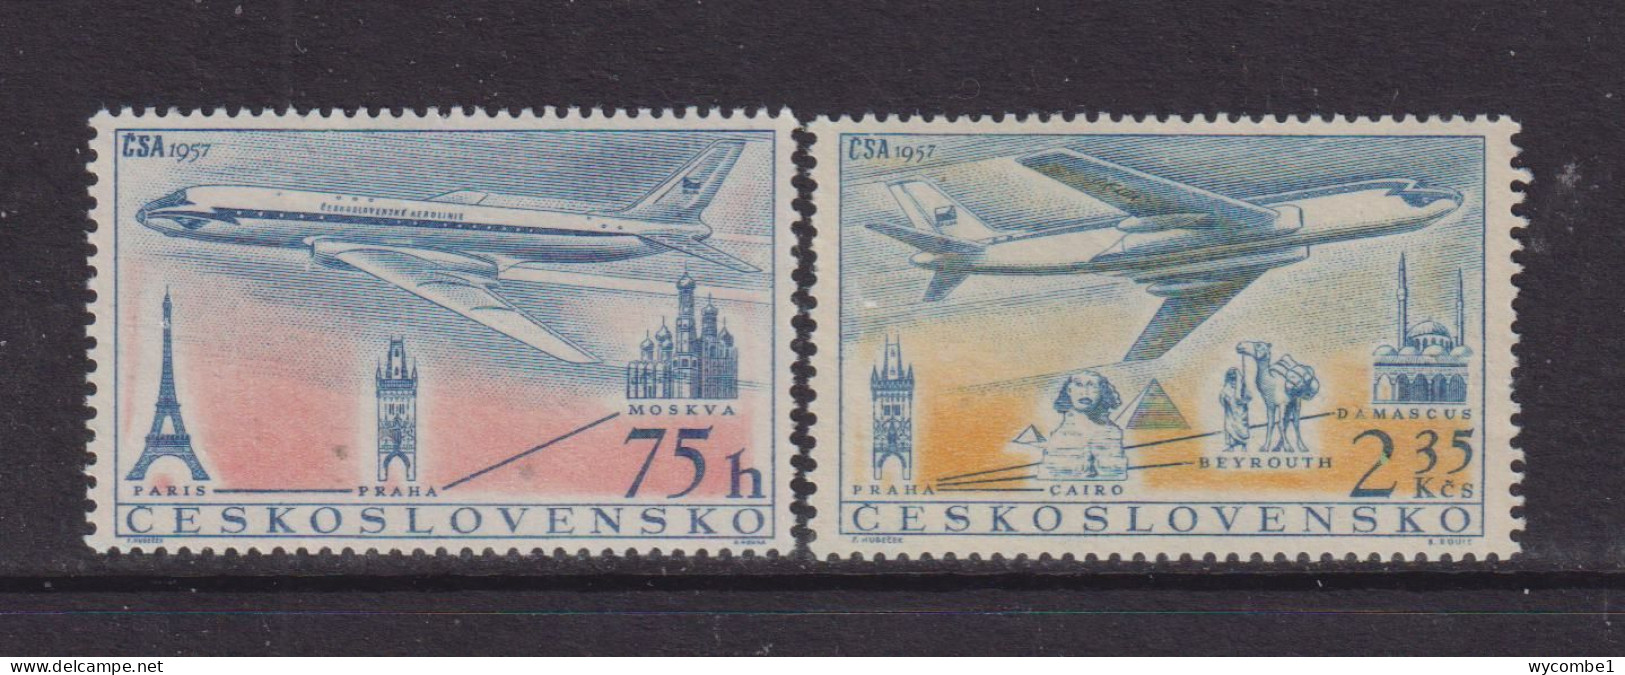 CZECHOSLOVAKIA  - 1957 Air Set  Never Hinged Mint - Ungebraucht